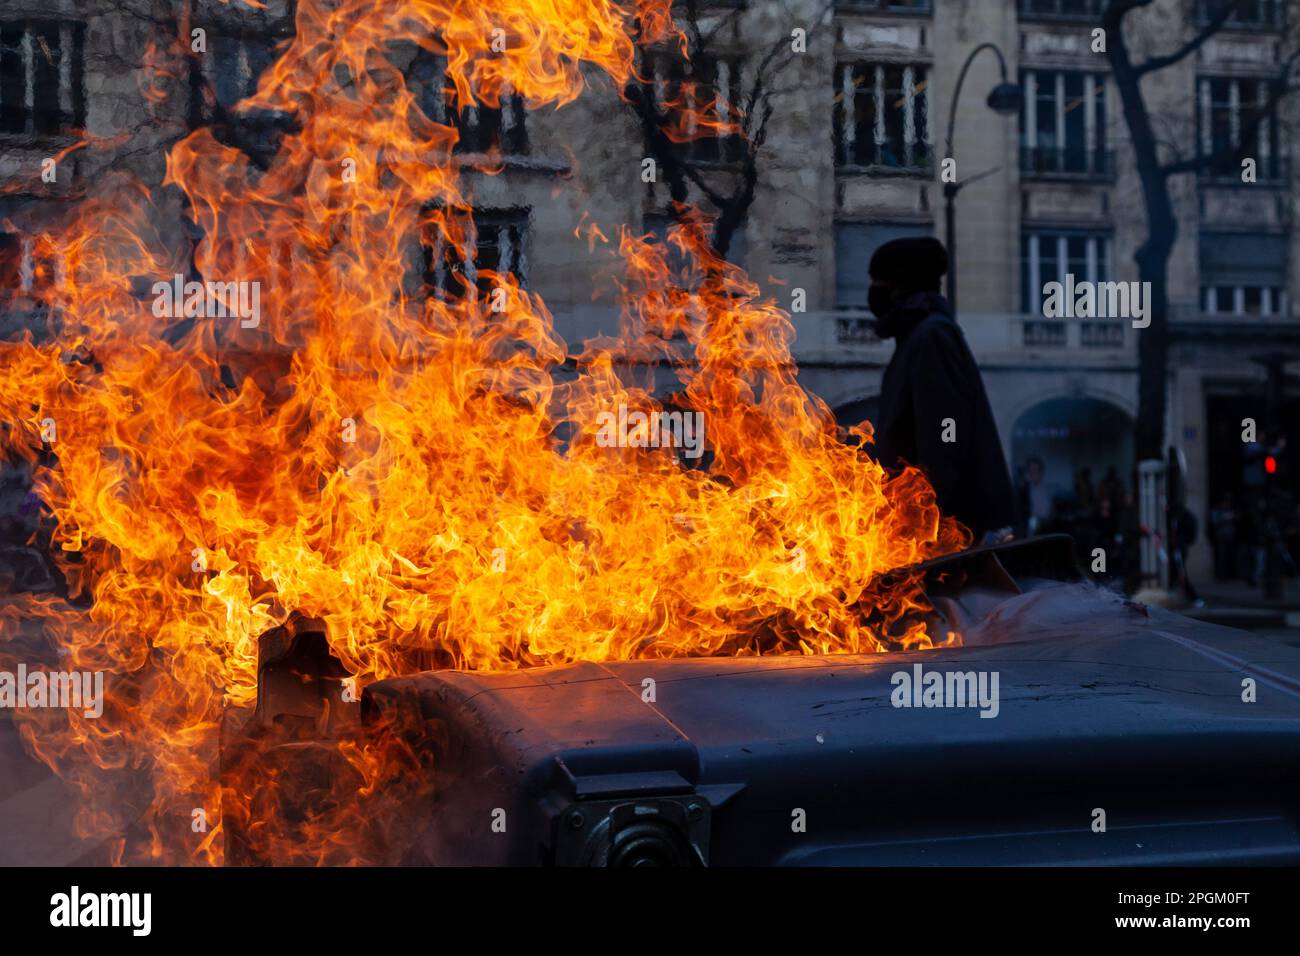 23 MARZO 2023 - PARIGI, FRANCIA : i manifestanti contro le riforme pensionistiche francesi camminano nelle strade di Parigi. Foto Stock